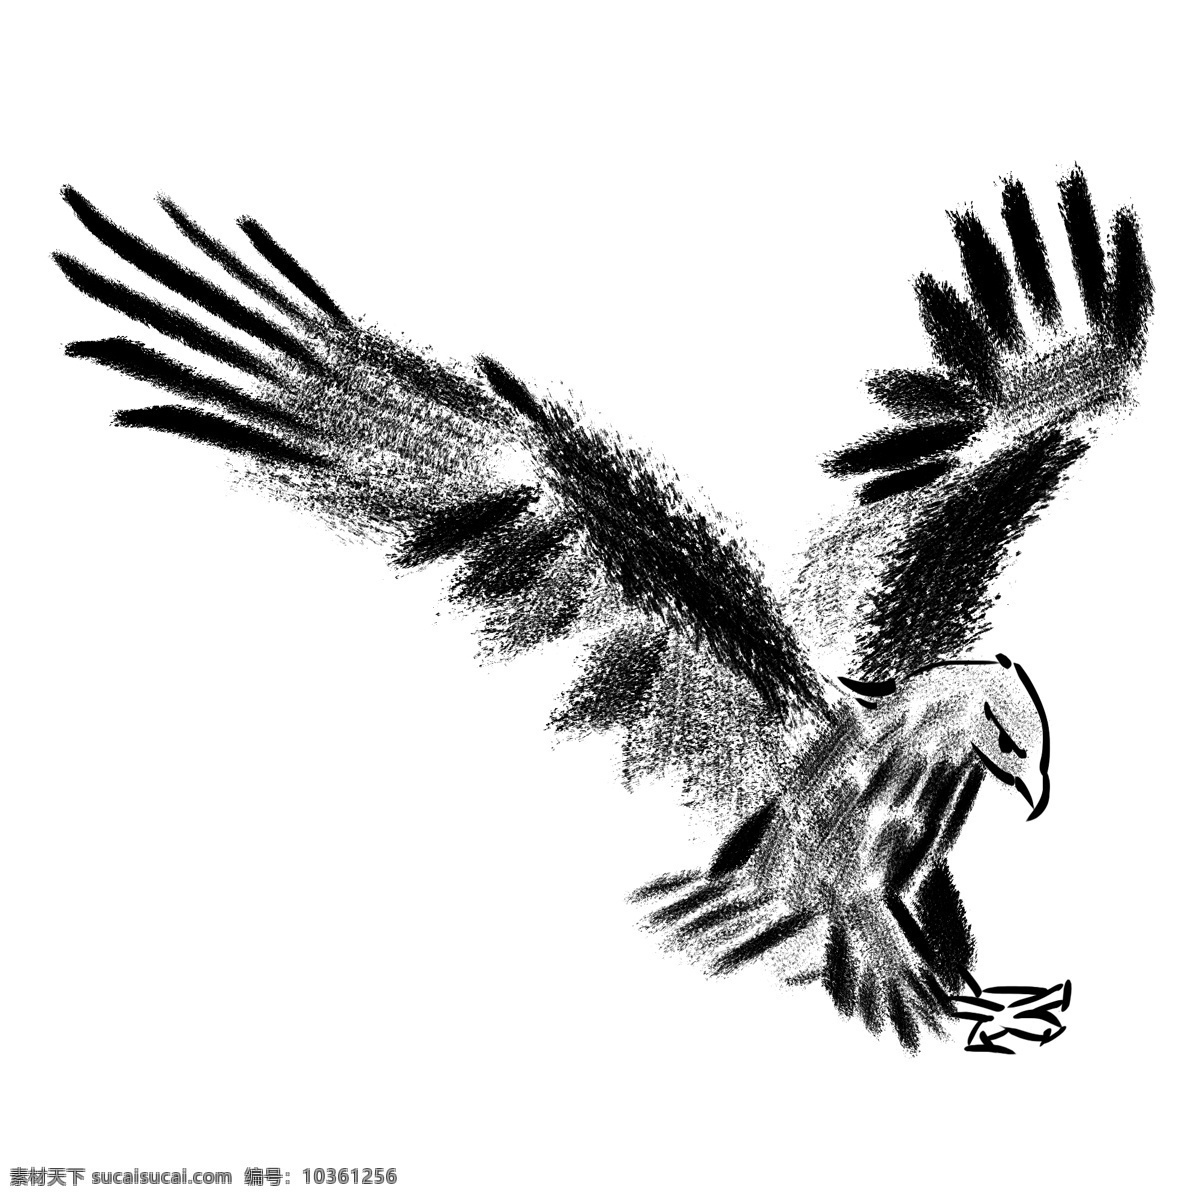 水墨 创意 老鹰 插画 飞翔的老鹰 展翅高飞 飞翔 鹰 鸟 动物 飞翔的鸟 中国风 手绘老鹰